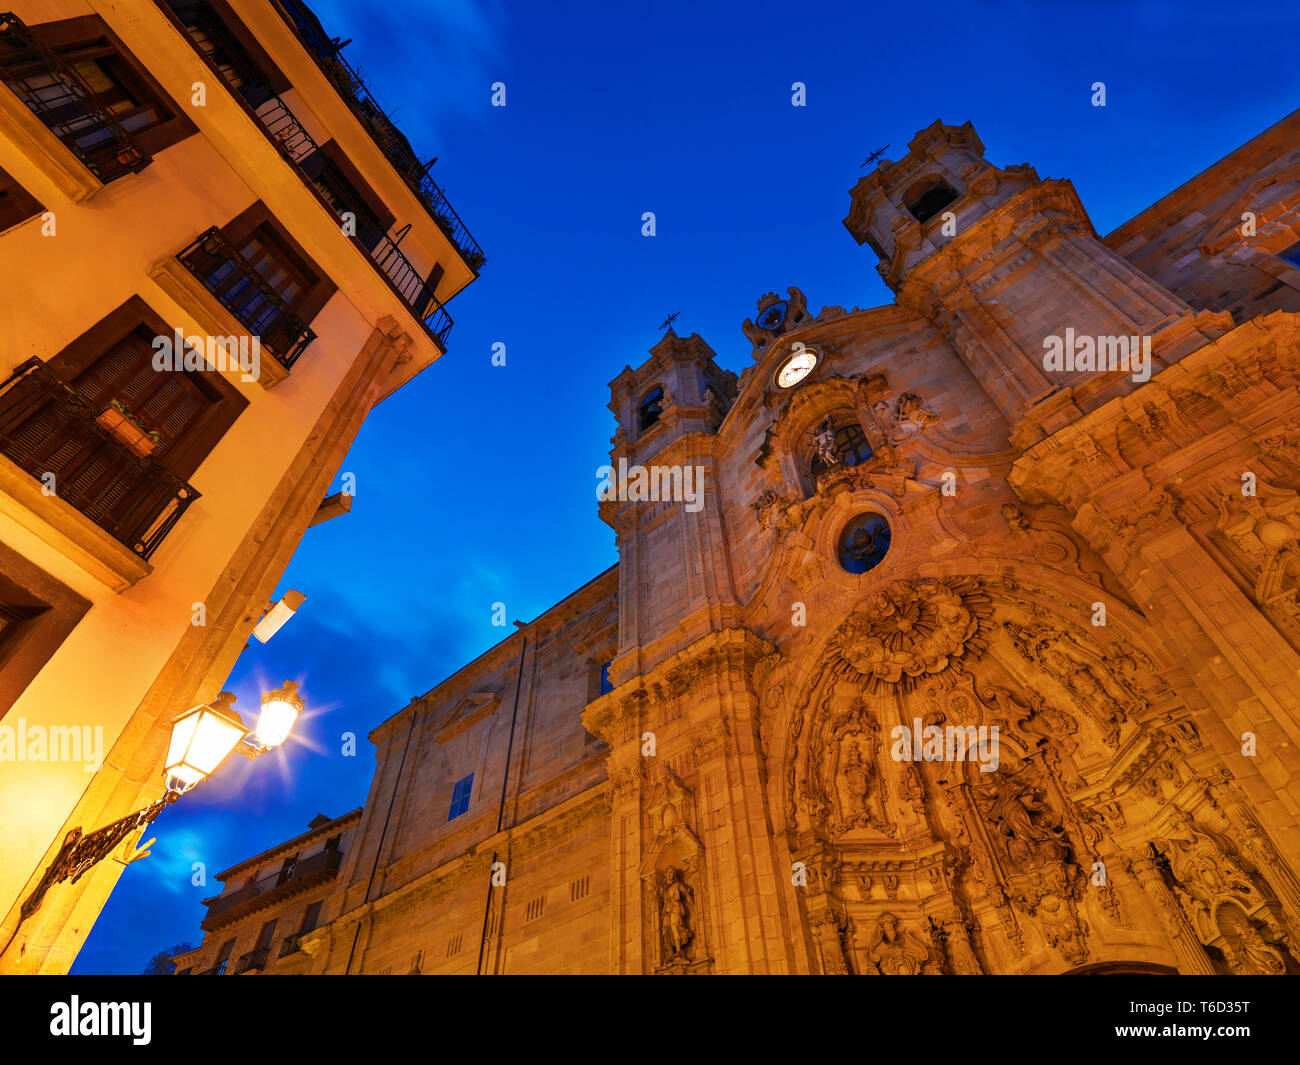 Spain, Basque Country, San Sebastian (Donostia). Santa Maria Church illuminated at night Stock Photo